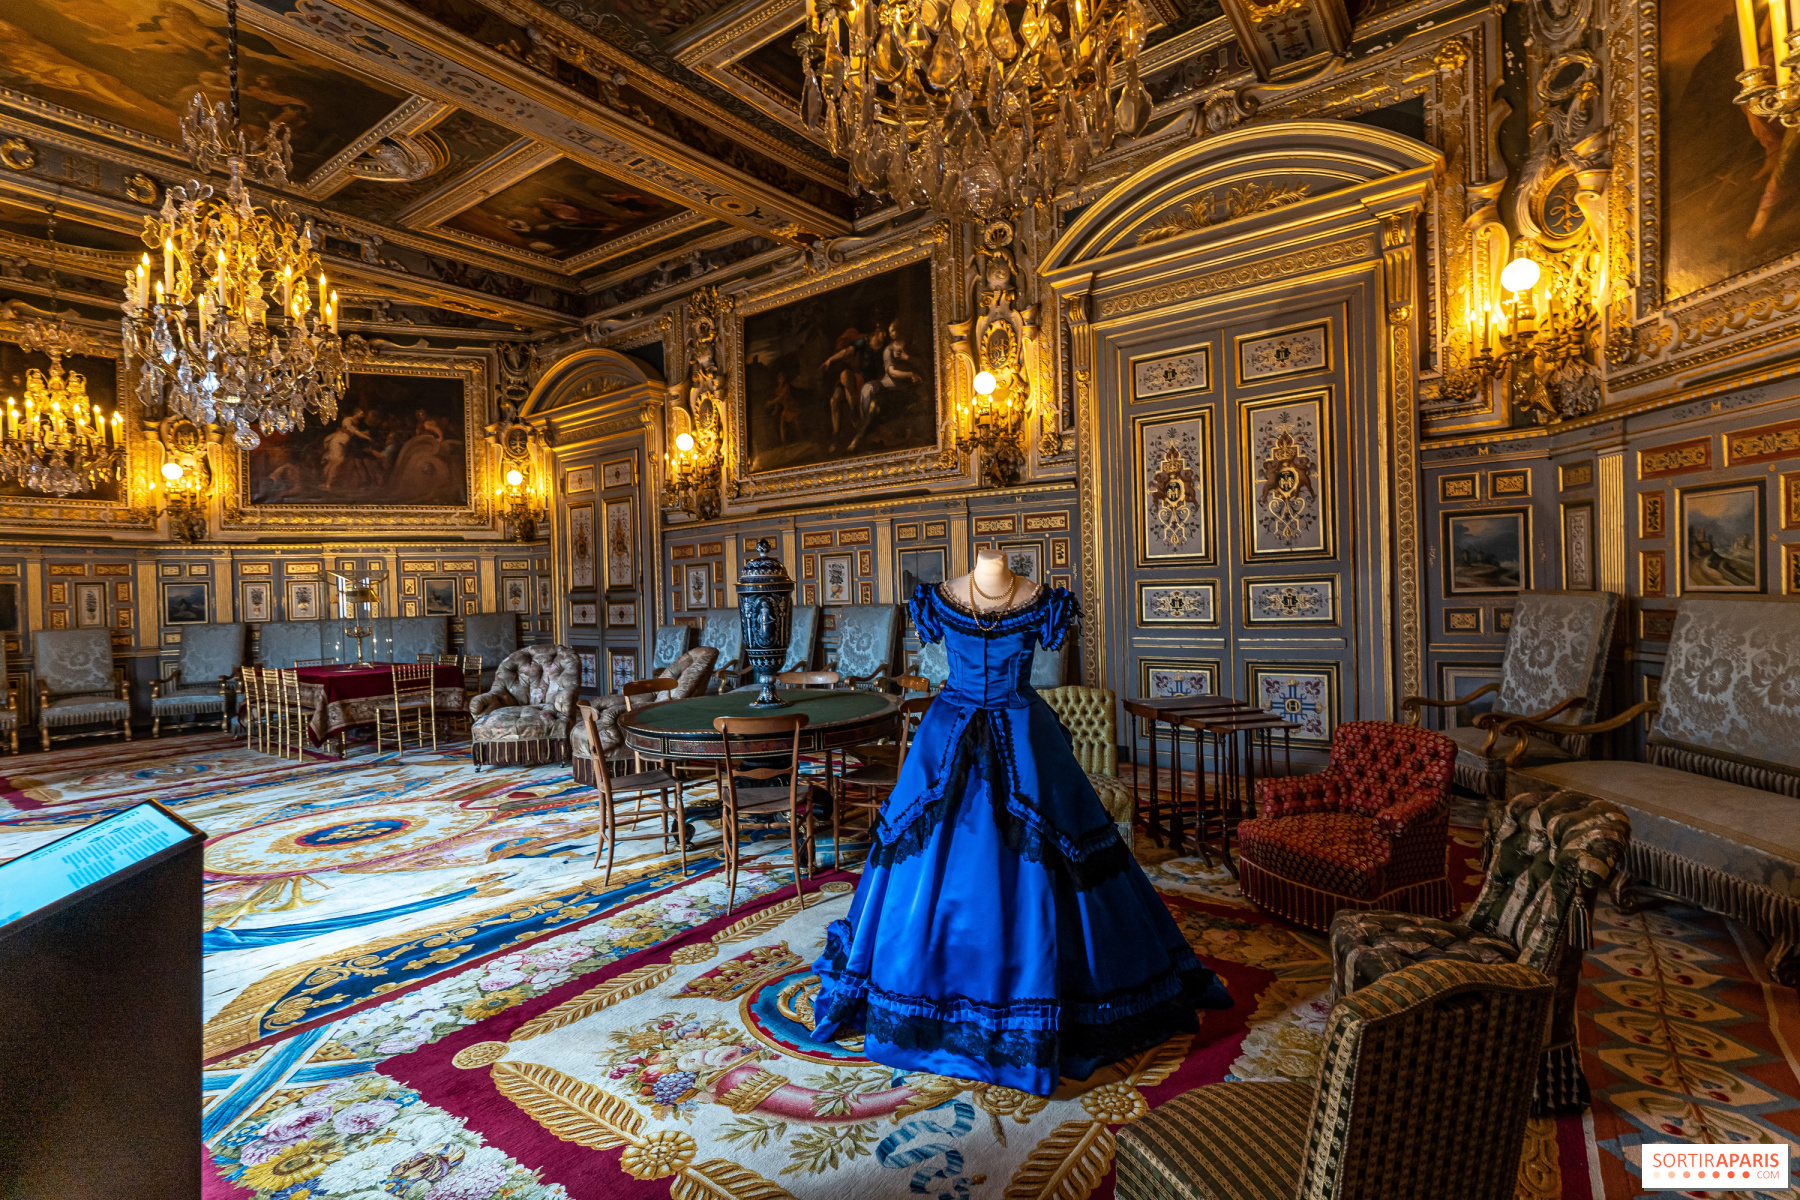 Лондон местонахождение королевской резиденции. Резиденция Наполеона (Фонтенбло). Замок в Фонтебло (Château de Fontainebleau). Кабиллон Бургундская Королевская резиденция. Фонтенбло постель Наполеона.